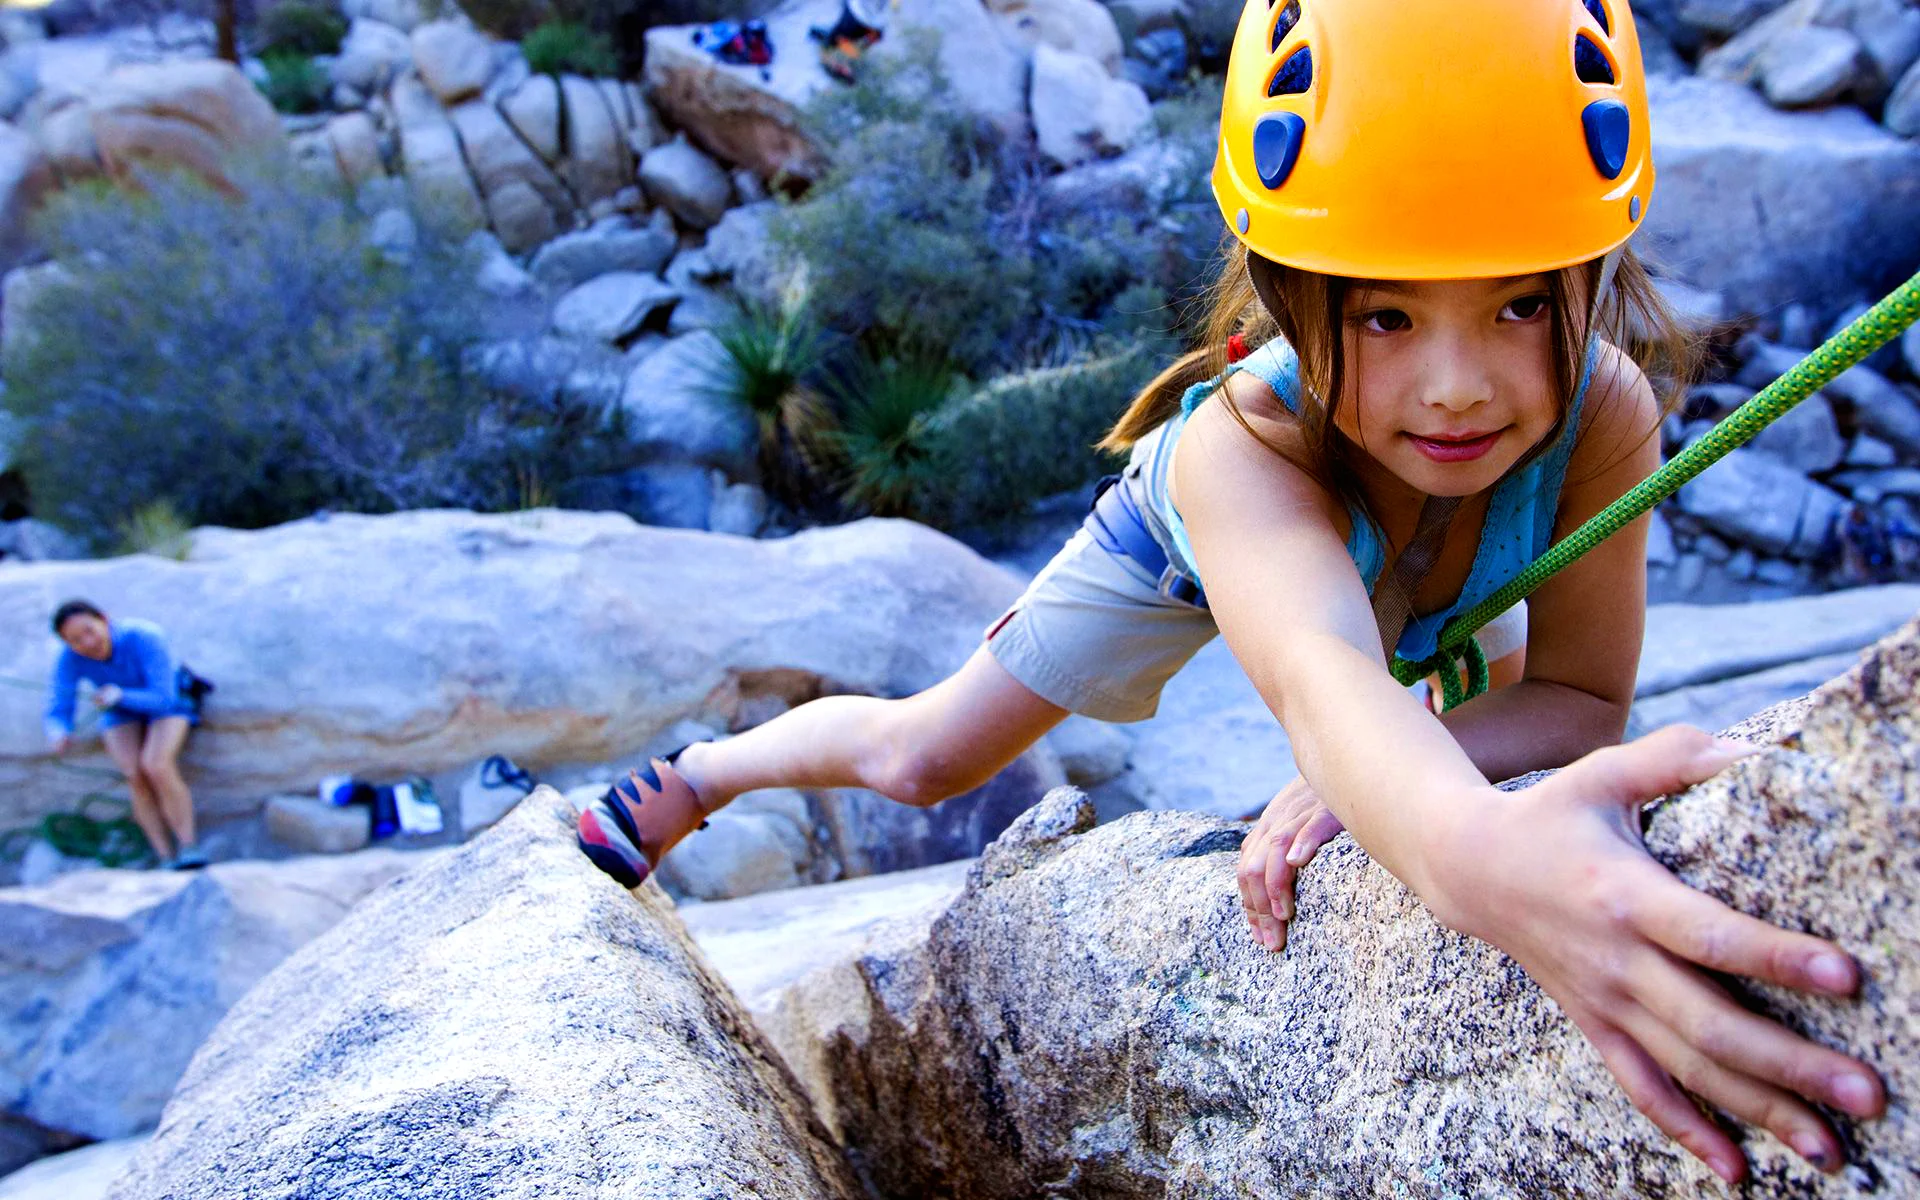 Une fillette escalade une paroi de montagne avec un casque et un système de sécurité.